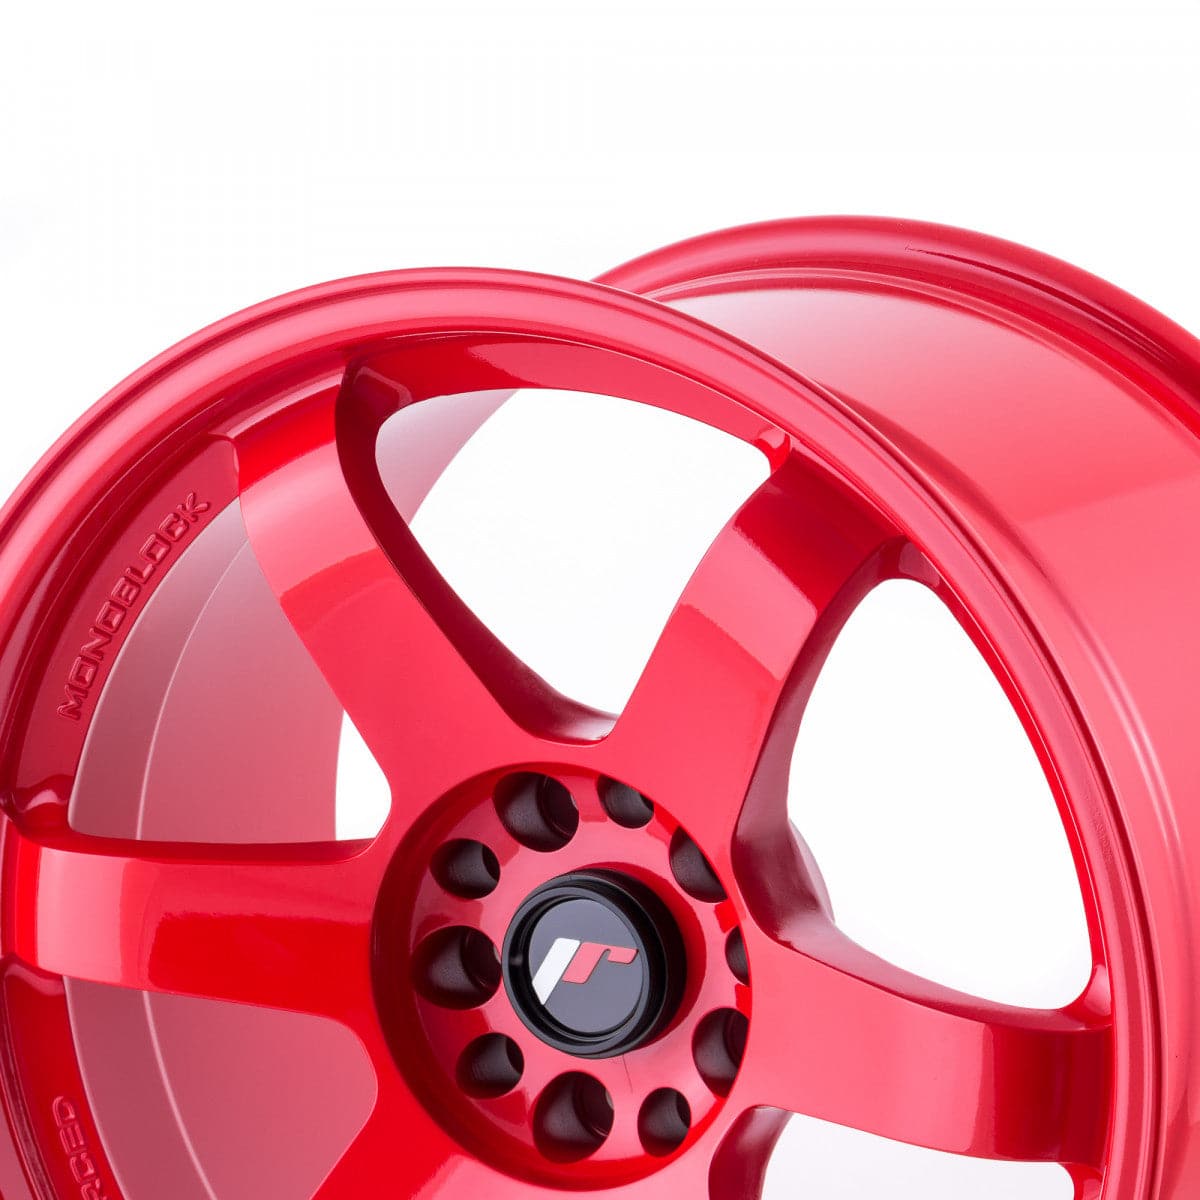 Alu kola Japan Racing JR3 17x7 ET20-42 BLANK Platinum Red WheelsUp